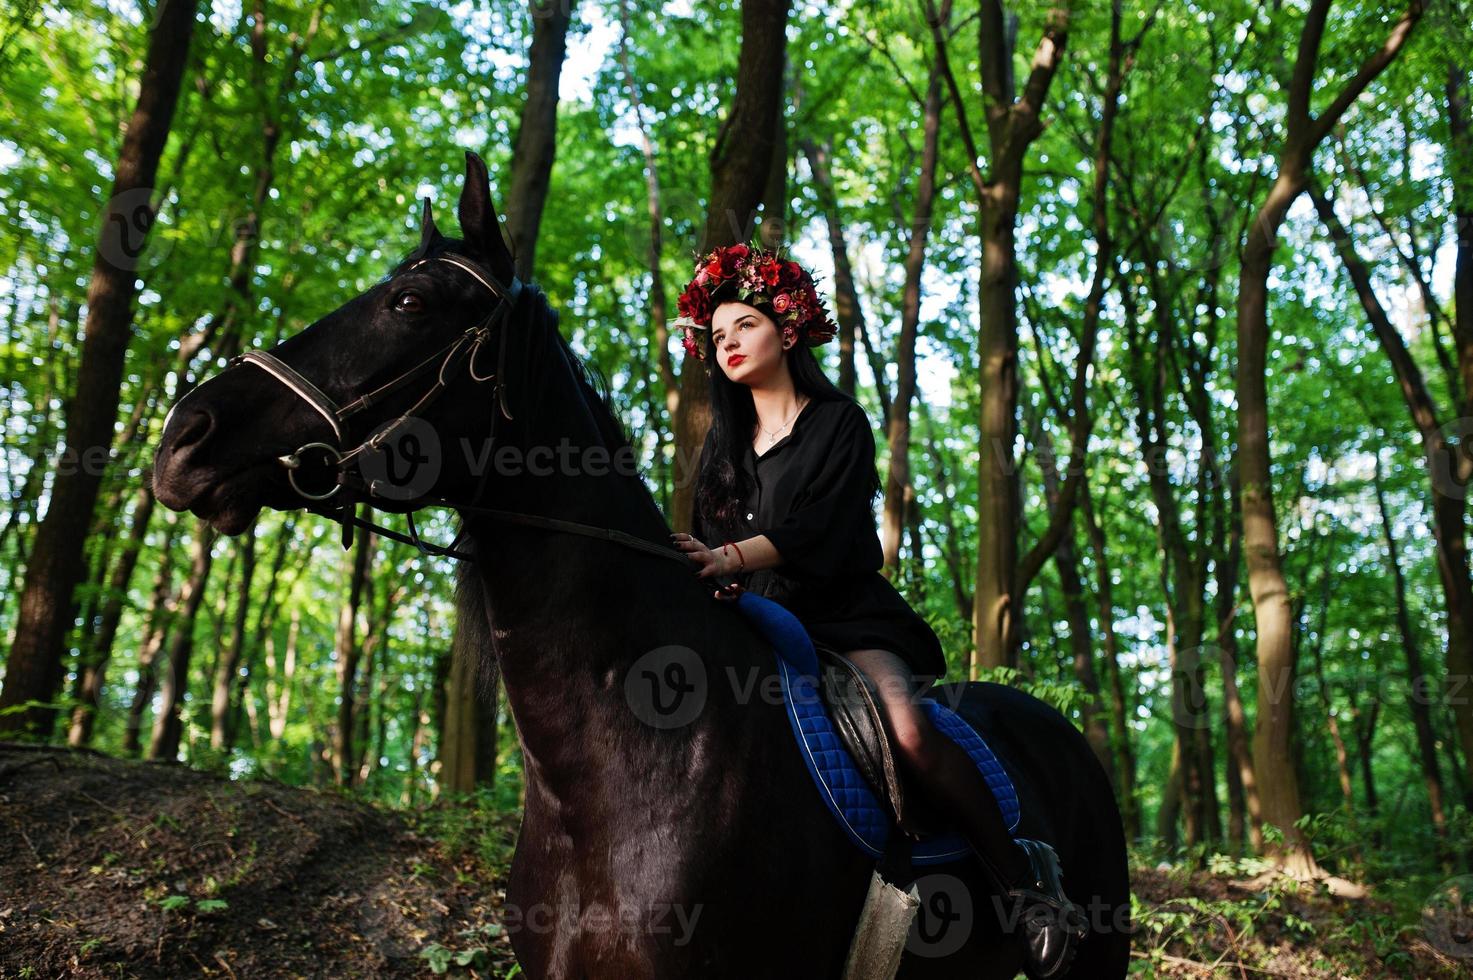 fille mystique en guirlande en noir à cheval en bois. photo